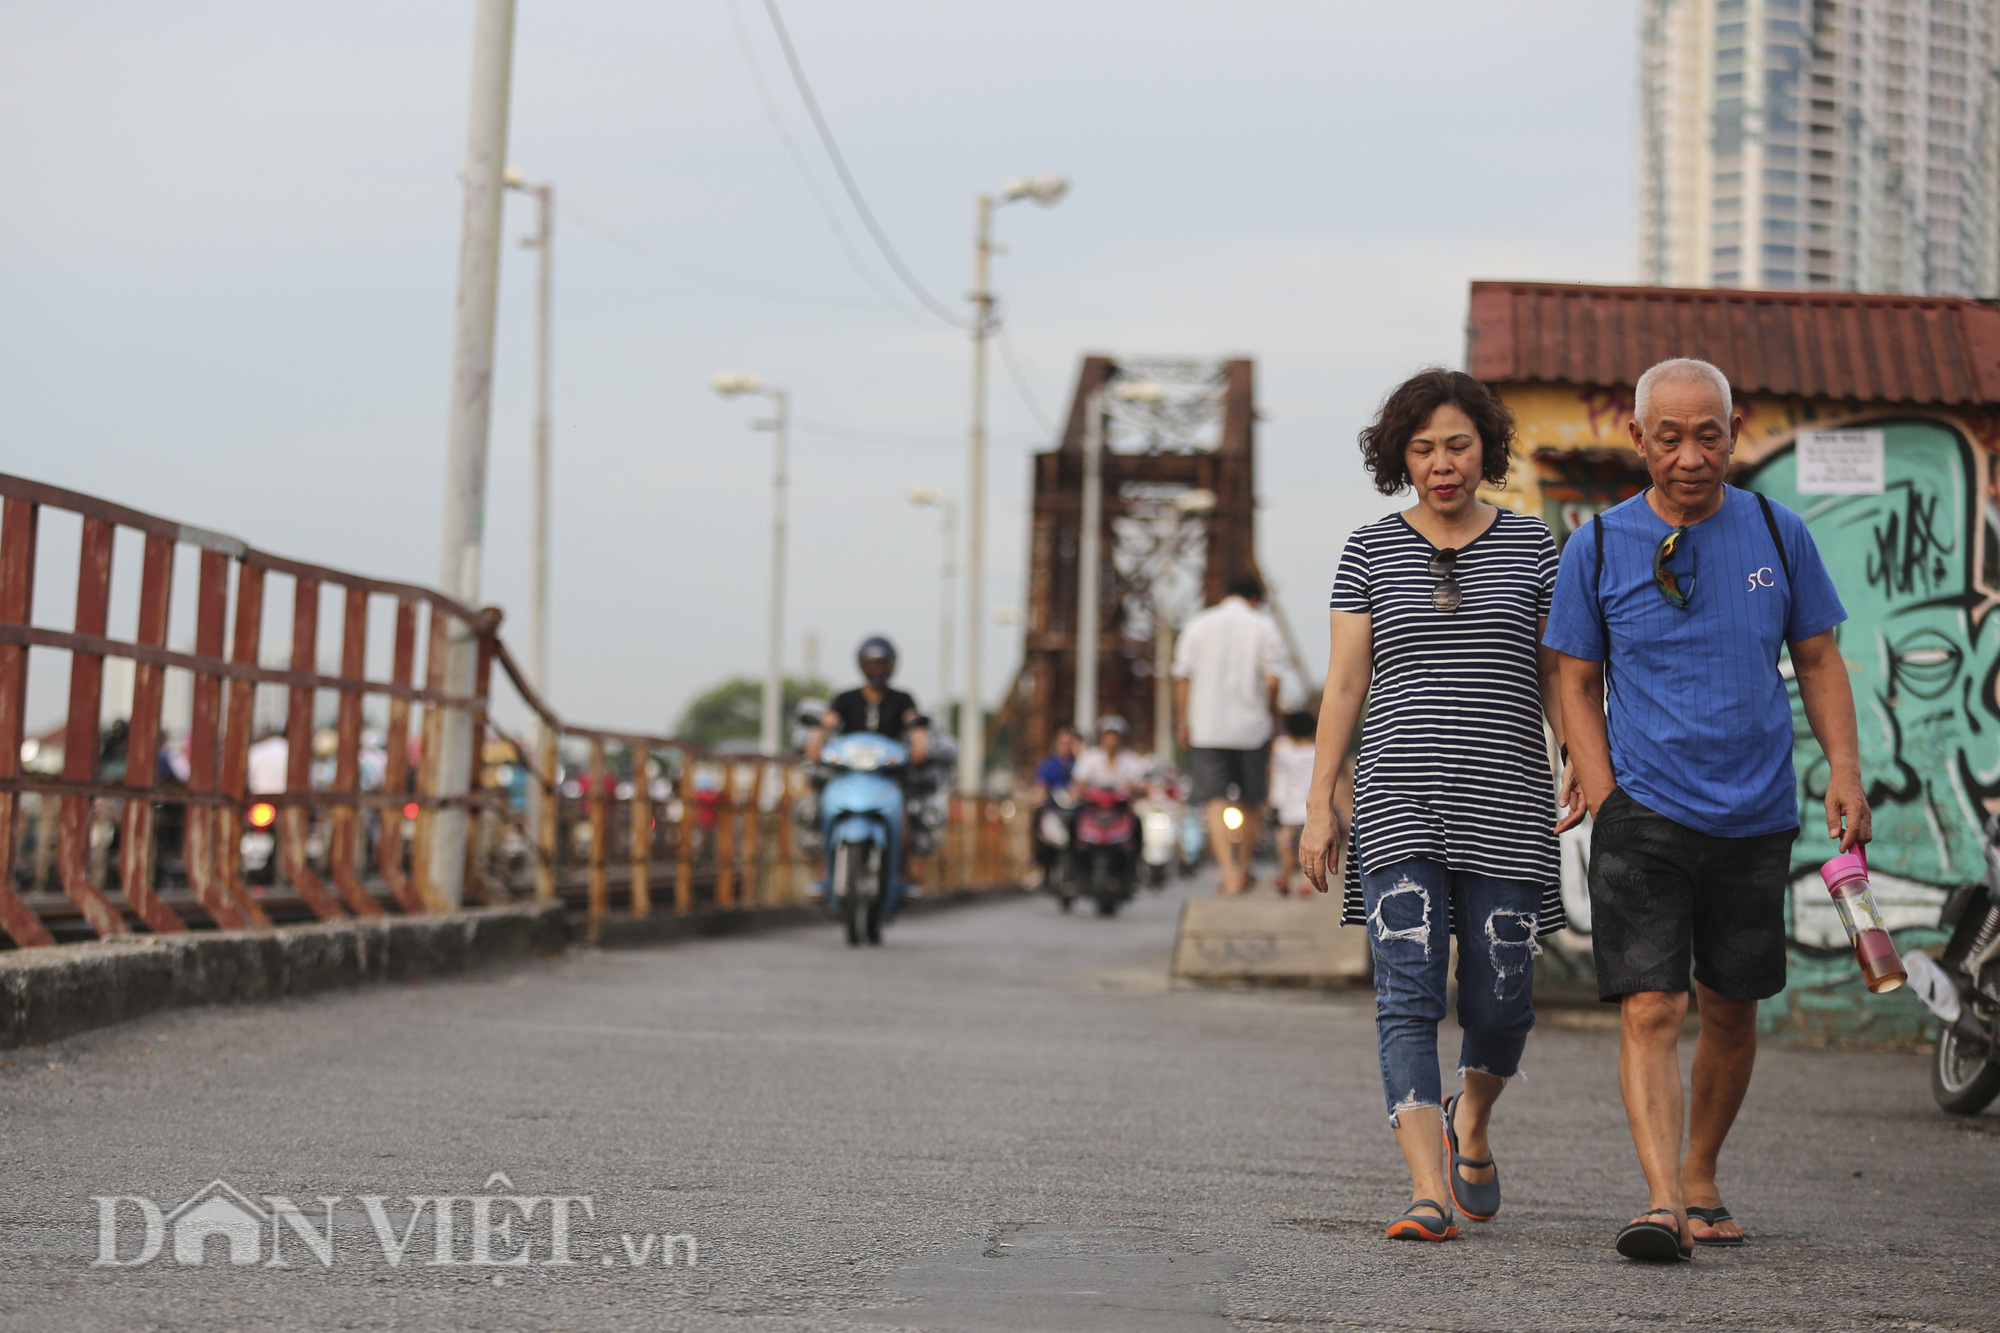 Mặc biển cấm, người dân vẫn vô tư đi bộ trên cầu Long Biên - Ảnh 12.